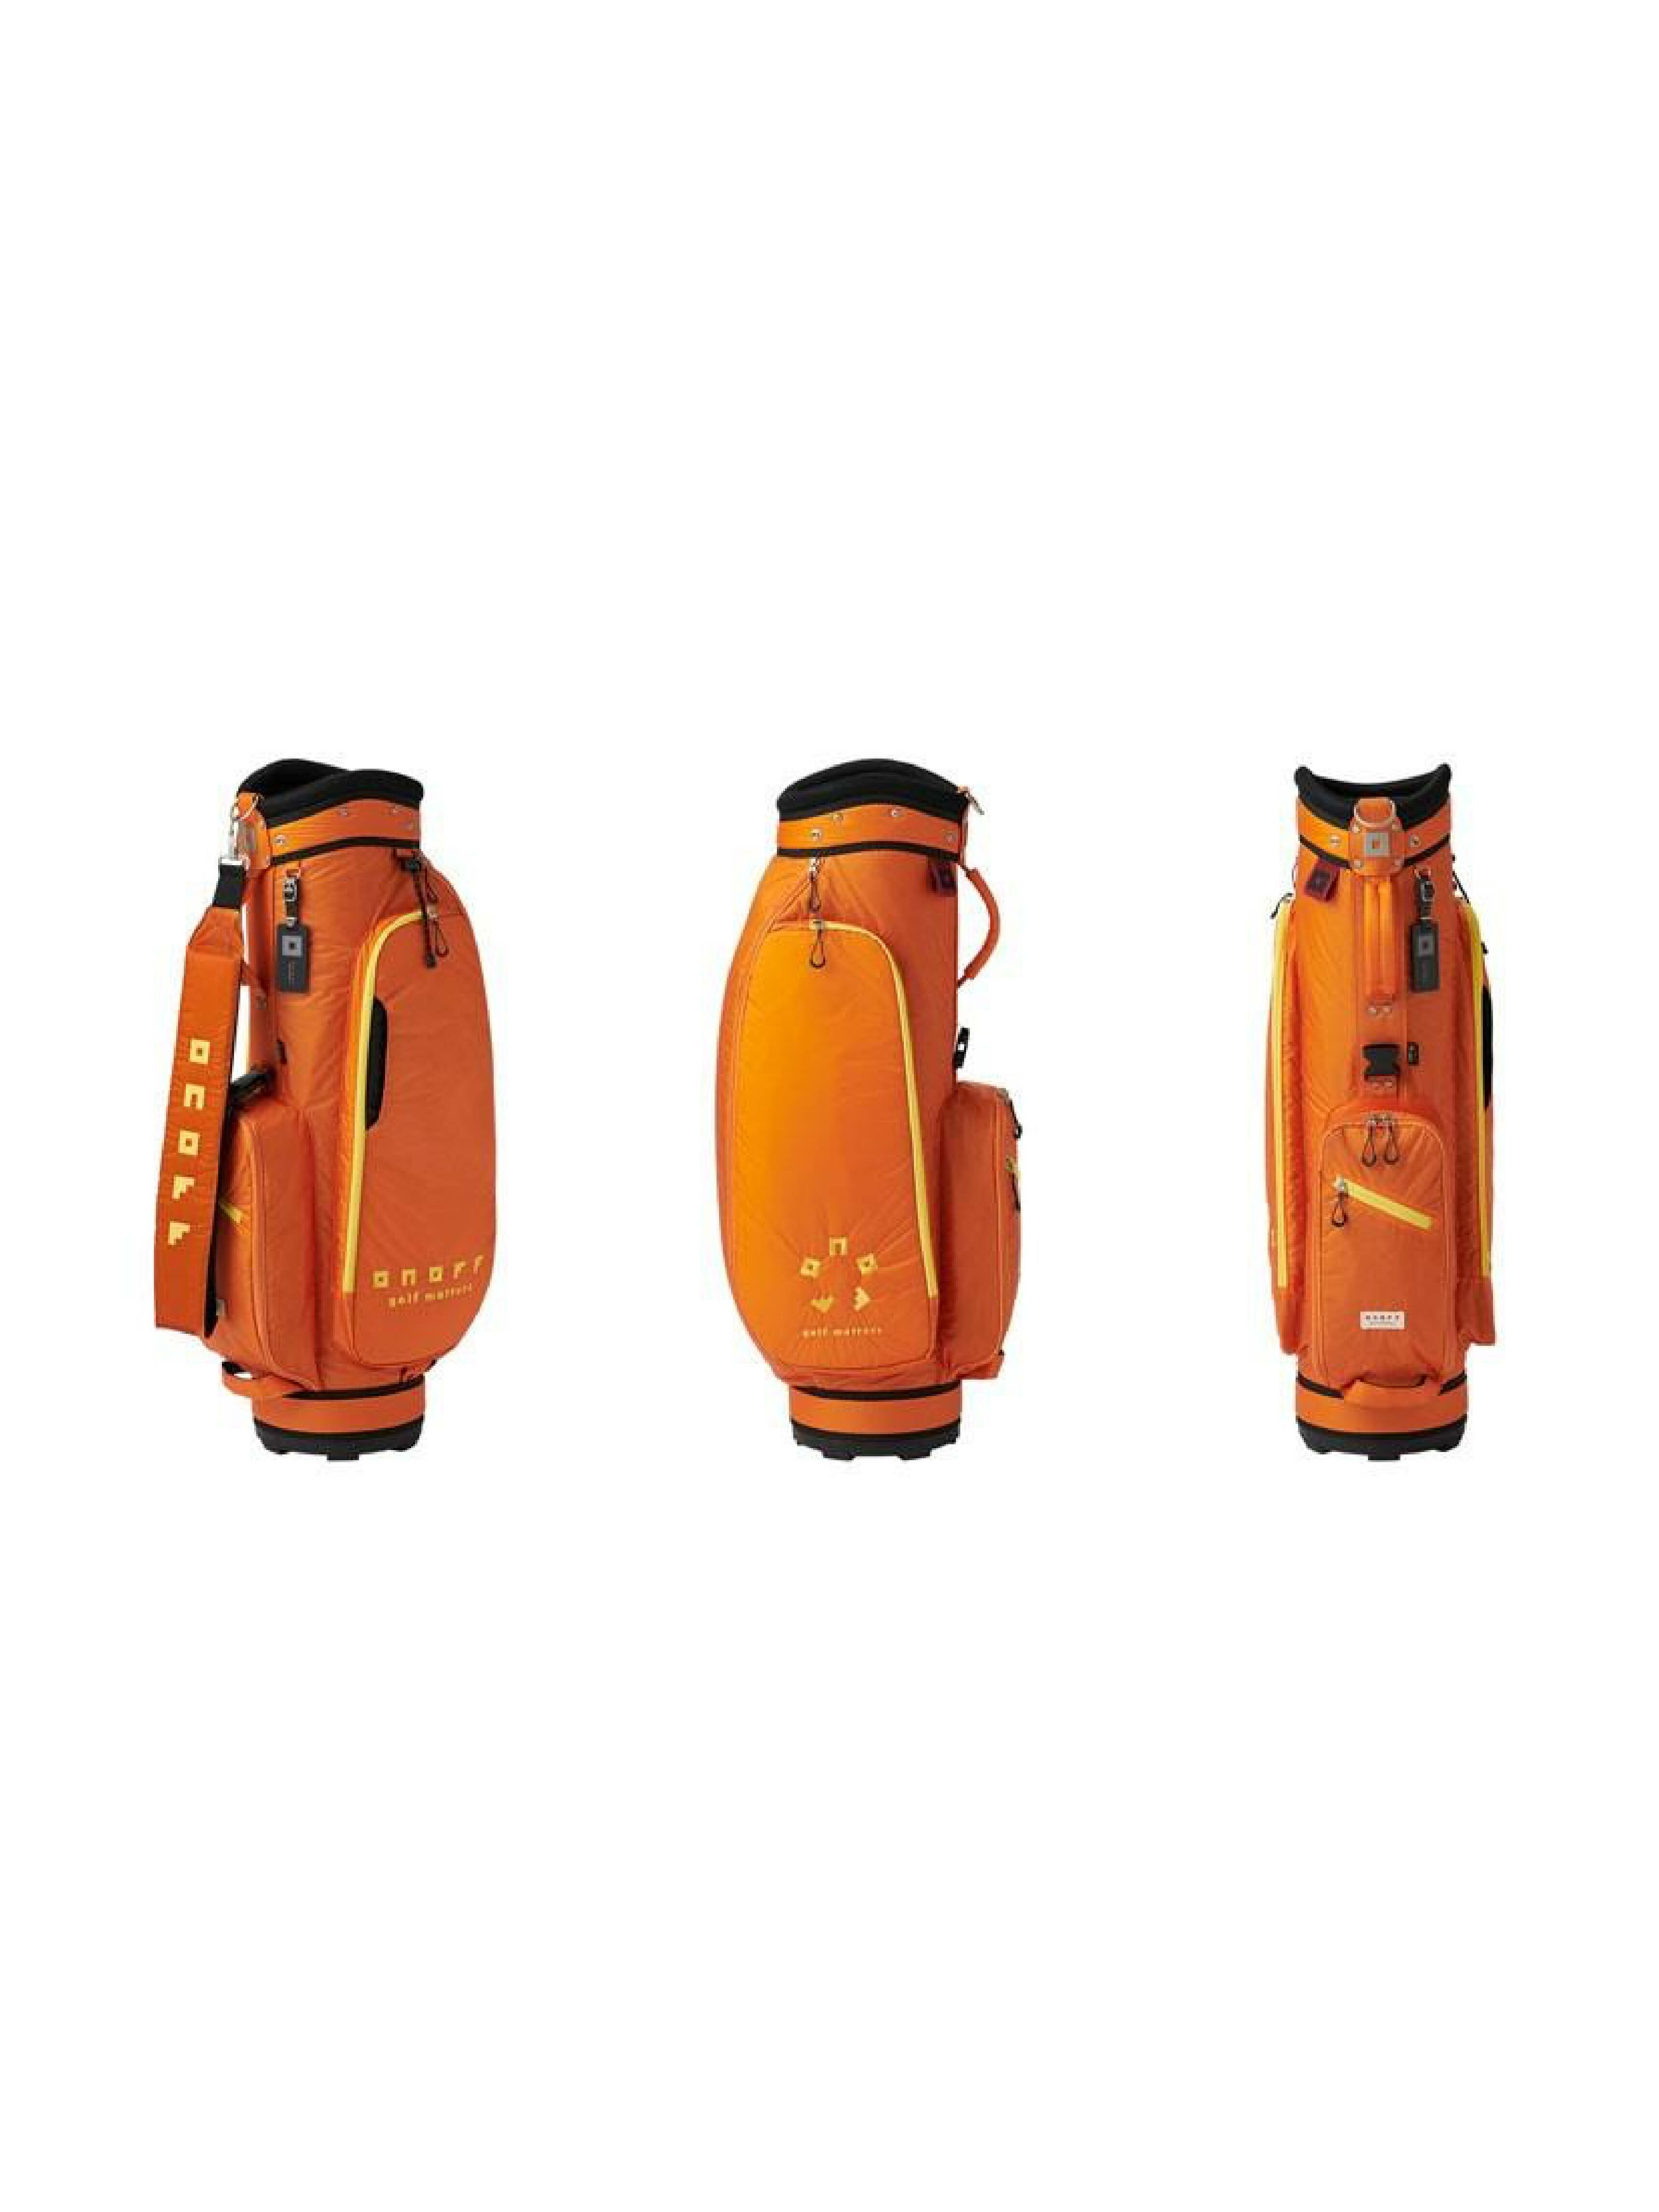 ONOFF【超輕2.3kg】8.5吋桿袋#OB3520 (橘色/紅色) 高爾夫球袋 